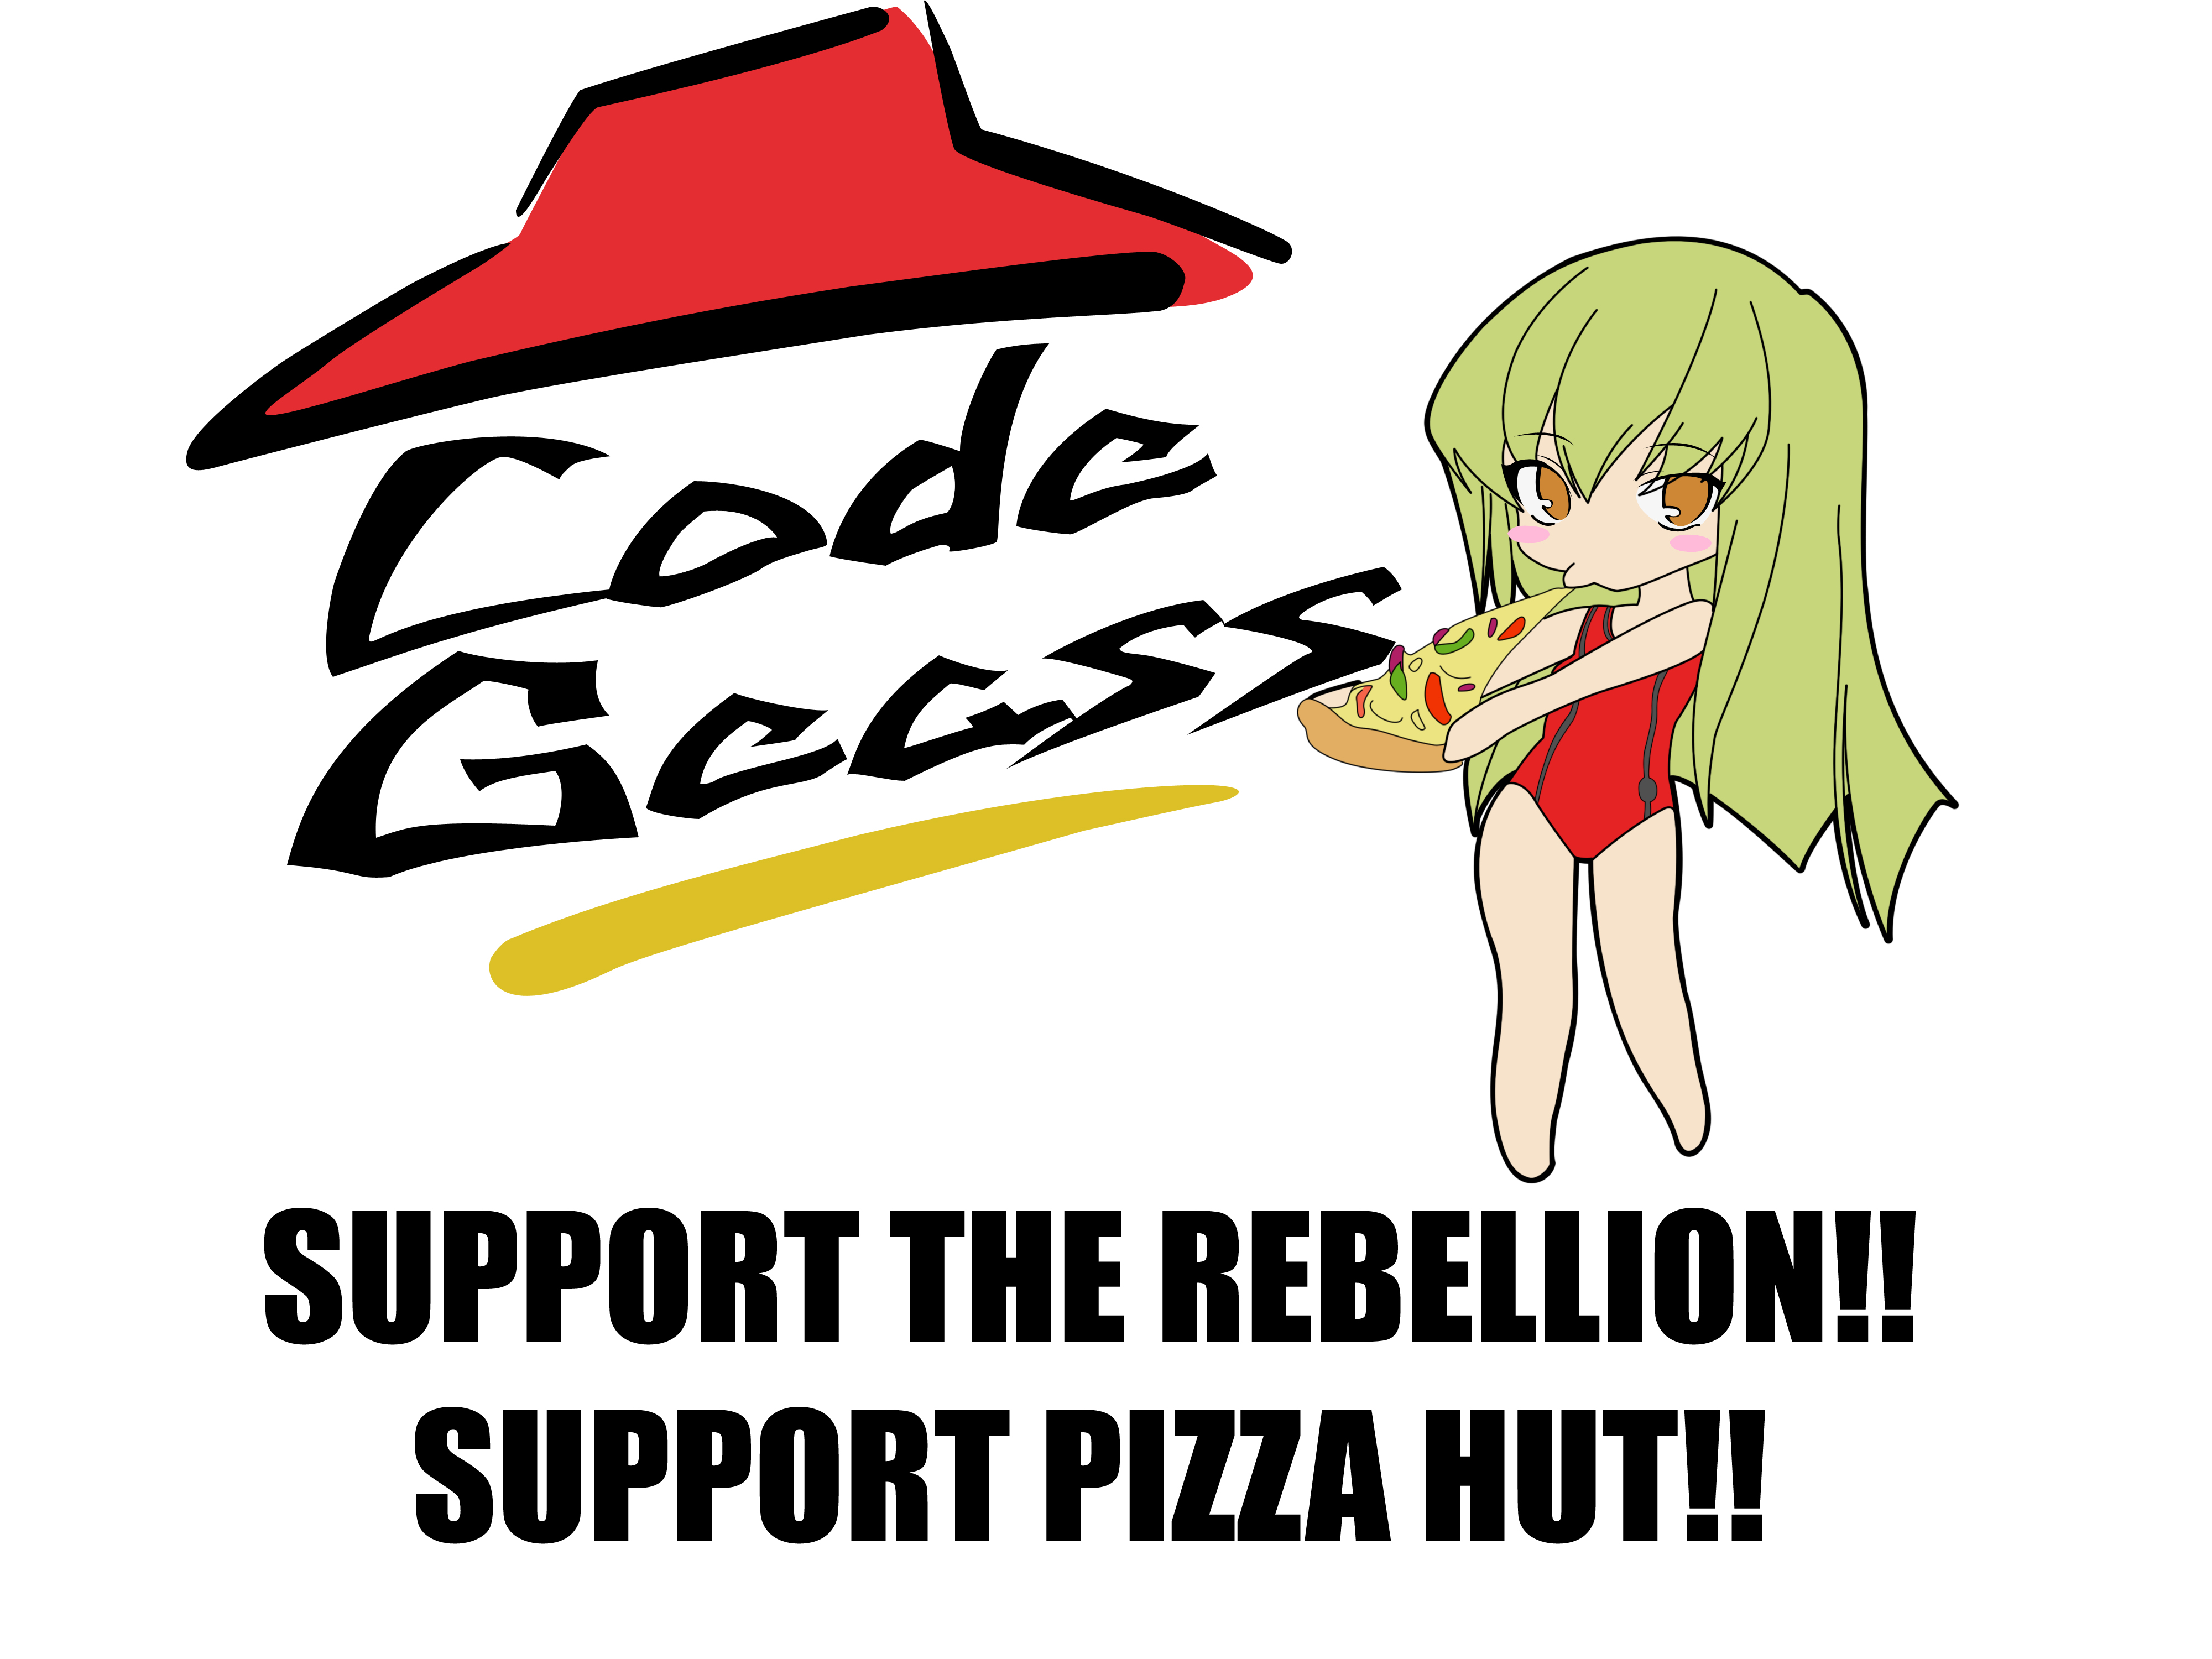 Descarga gratuita de fondo de pantalla para móvil de Animado, Code Geass: Lelouch Of The Rebellion, Cc (Código Geass).